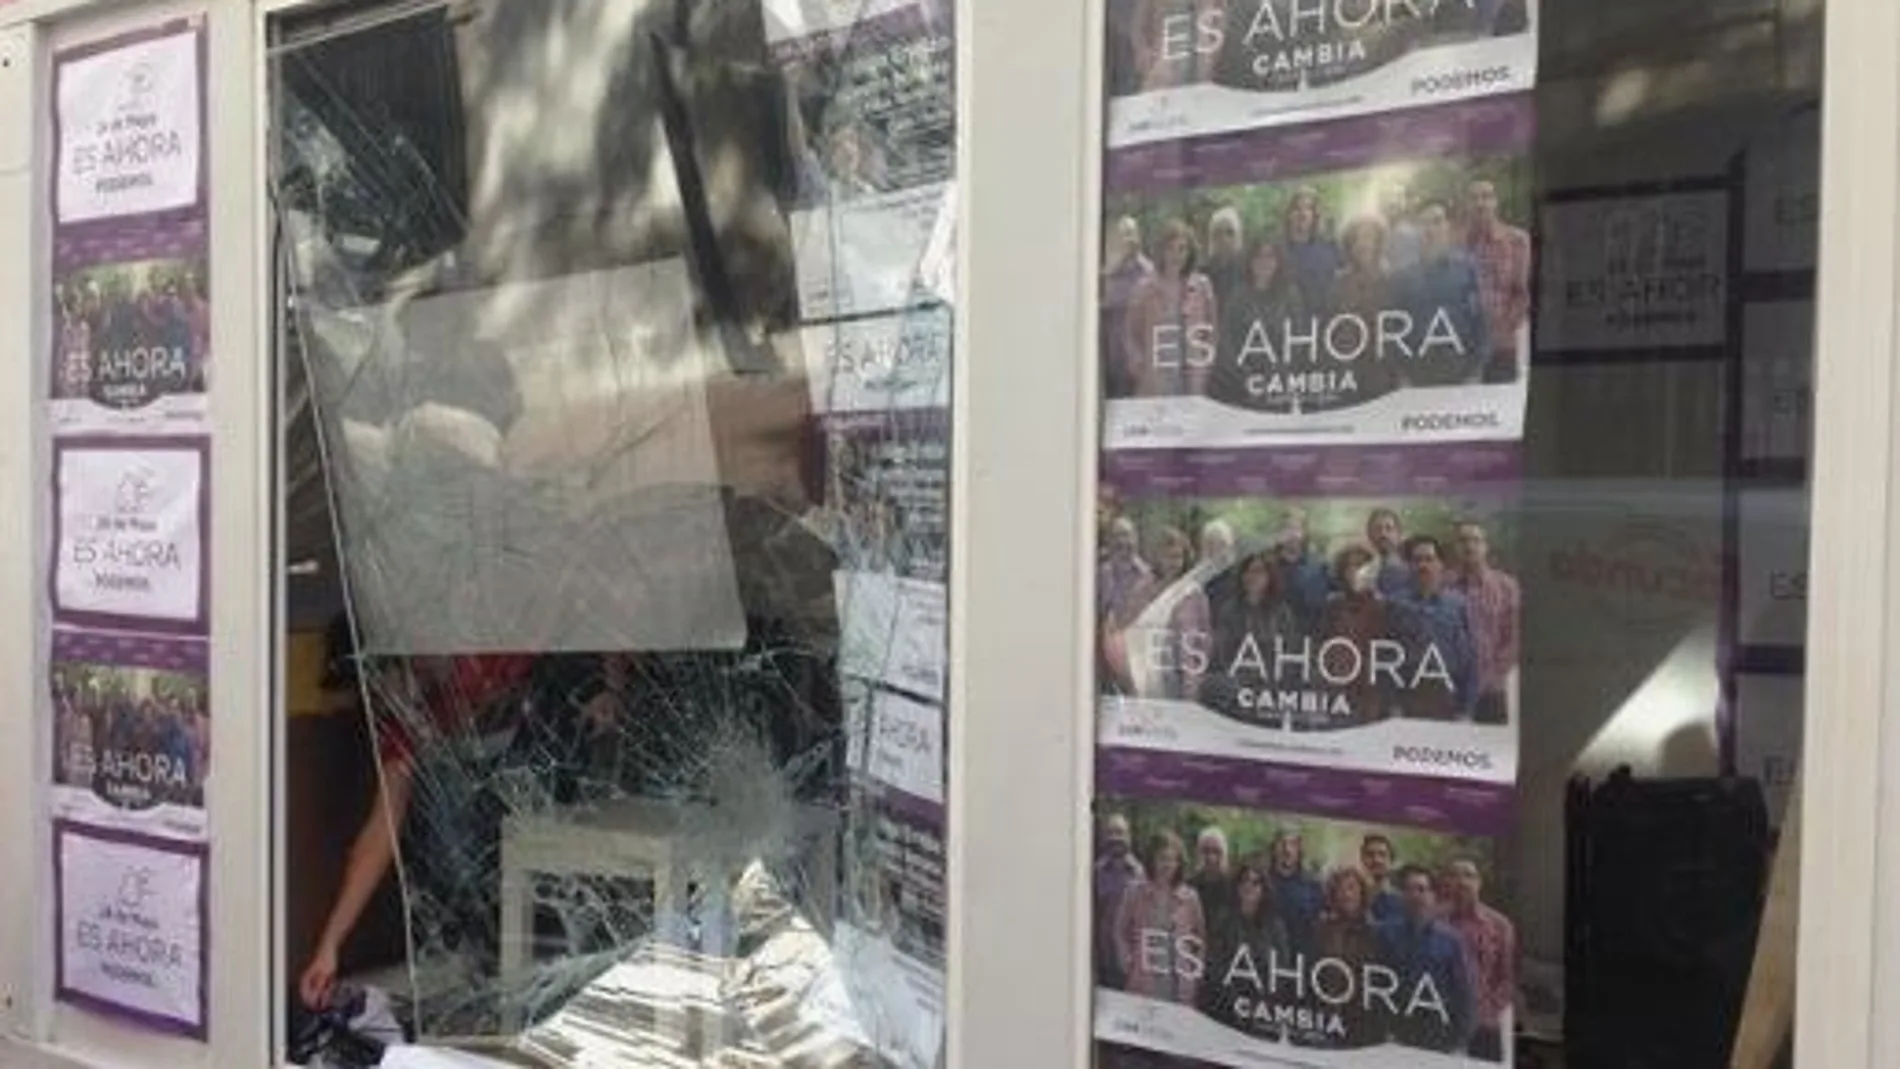 La caseta electoral de Podemos en Valladolid sufre un ataque esta madrugada